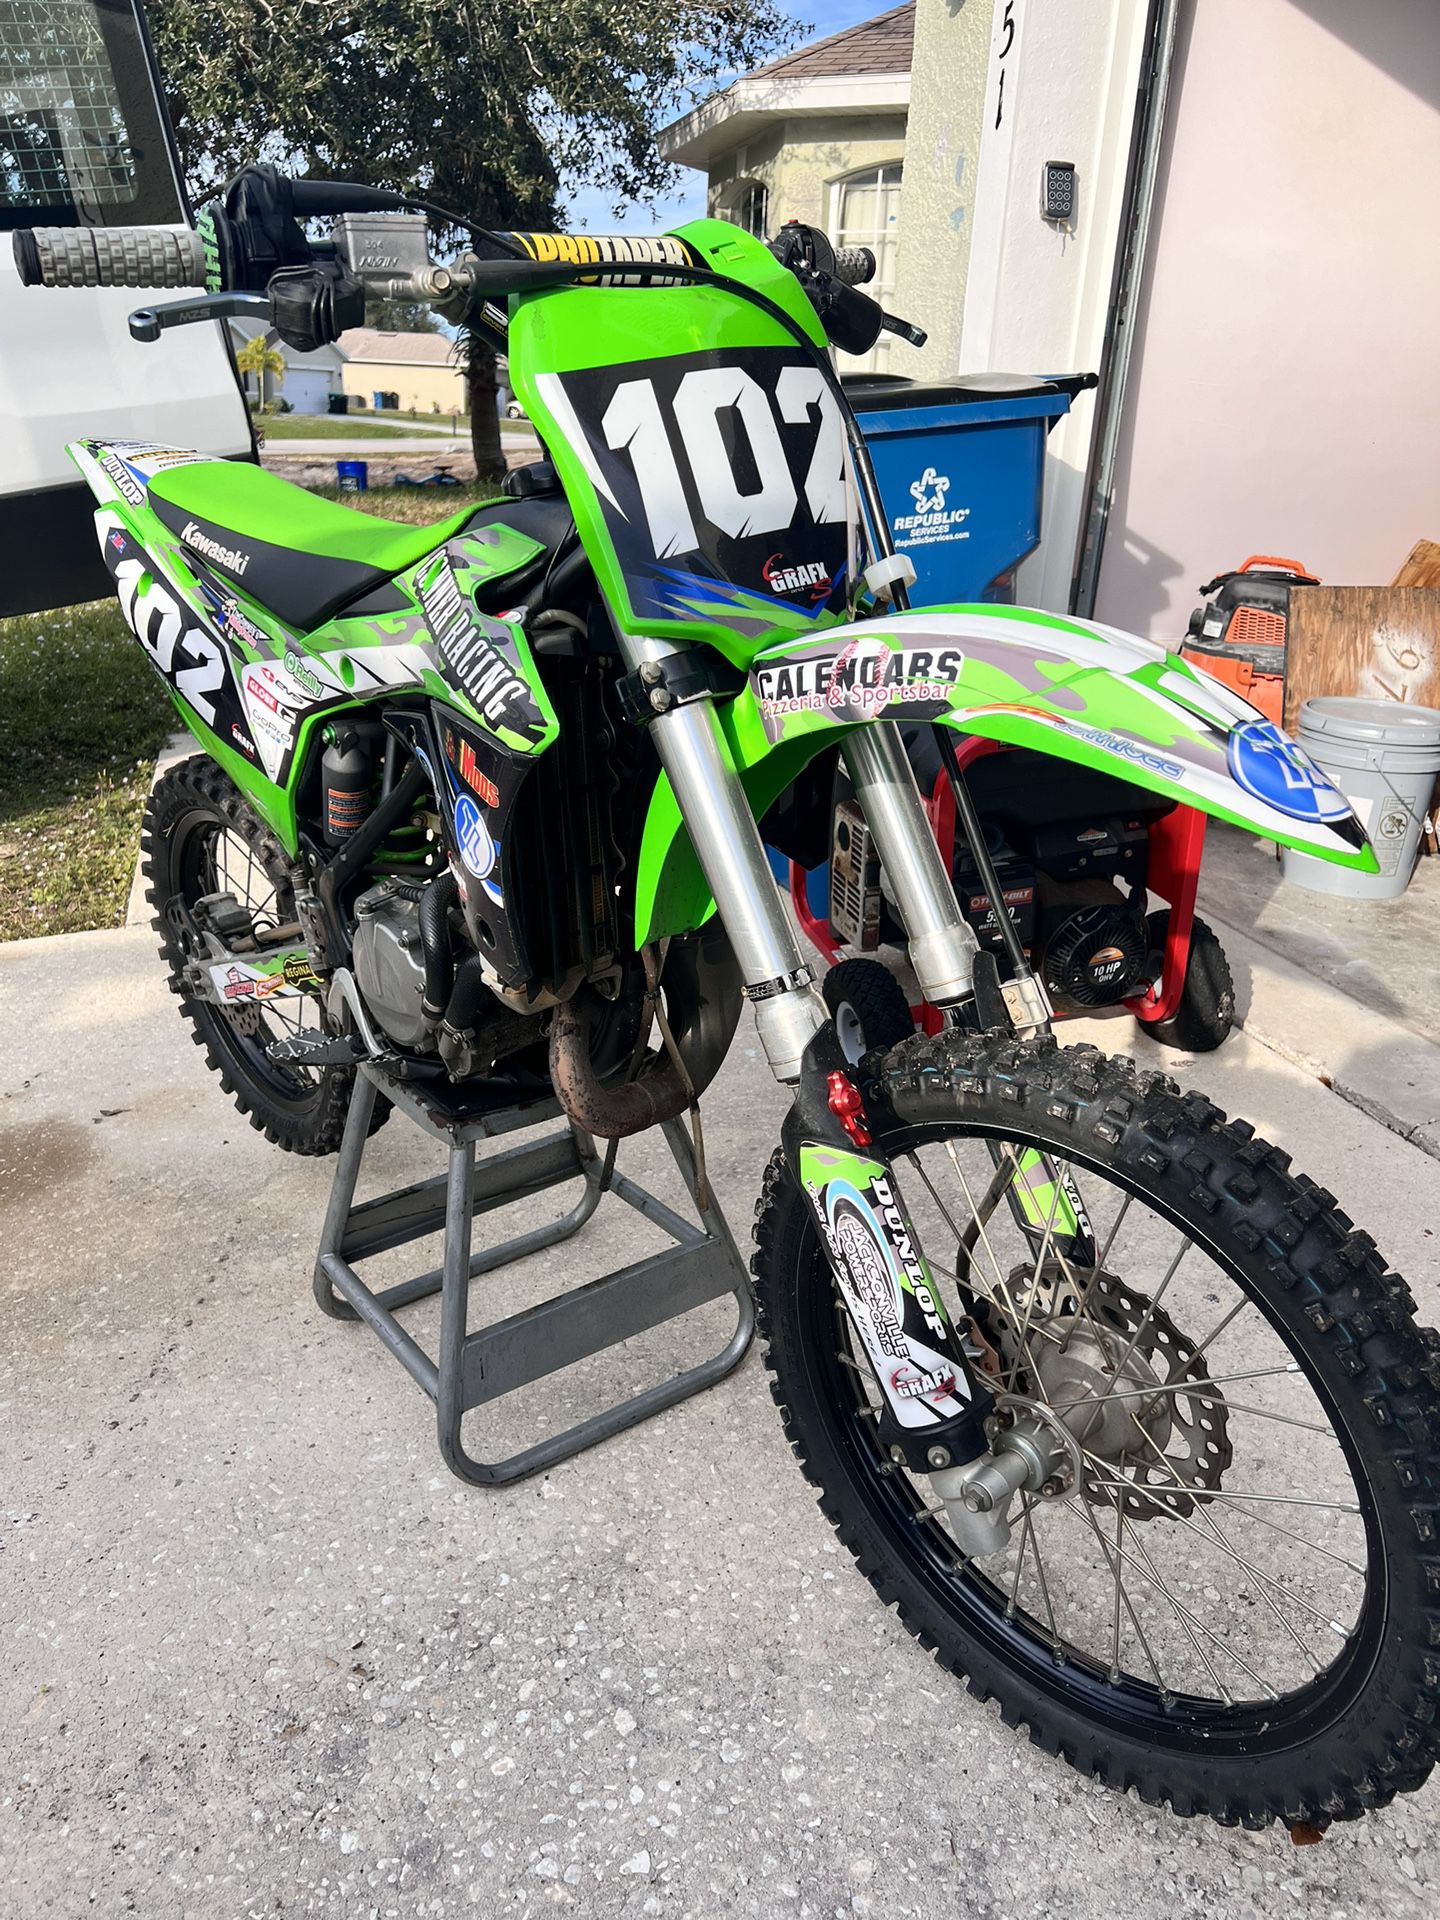 2015 Kawasaki 100cc -$3,600